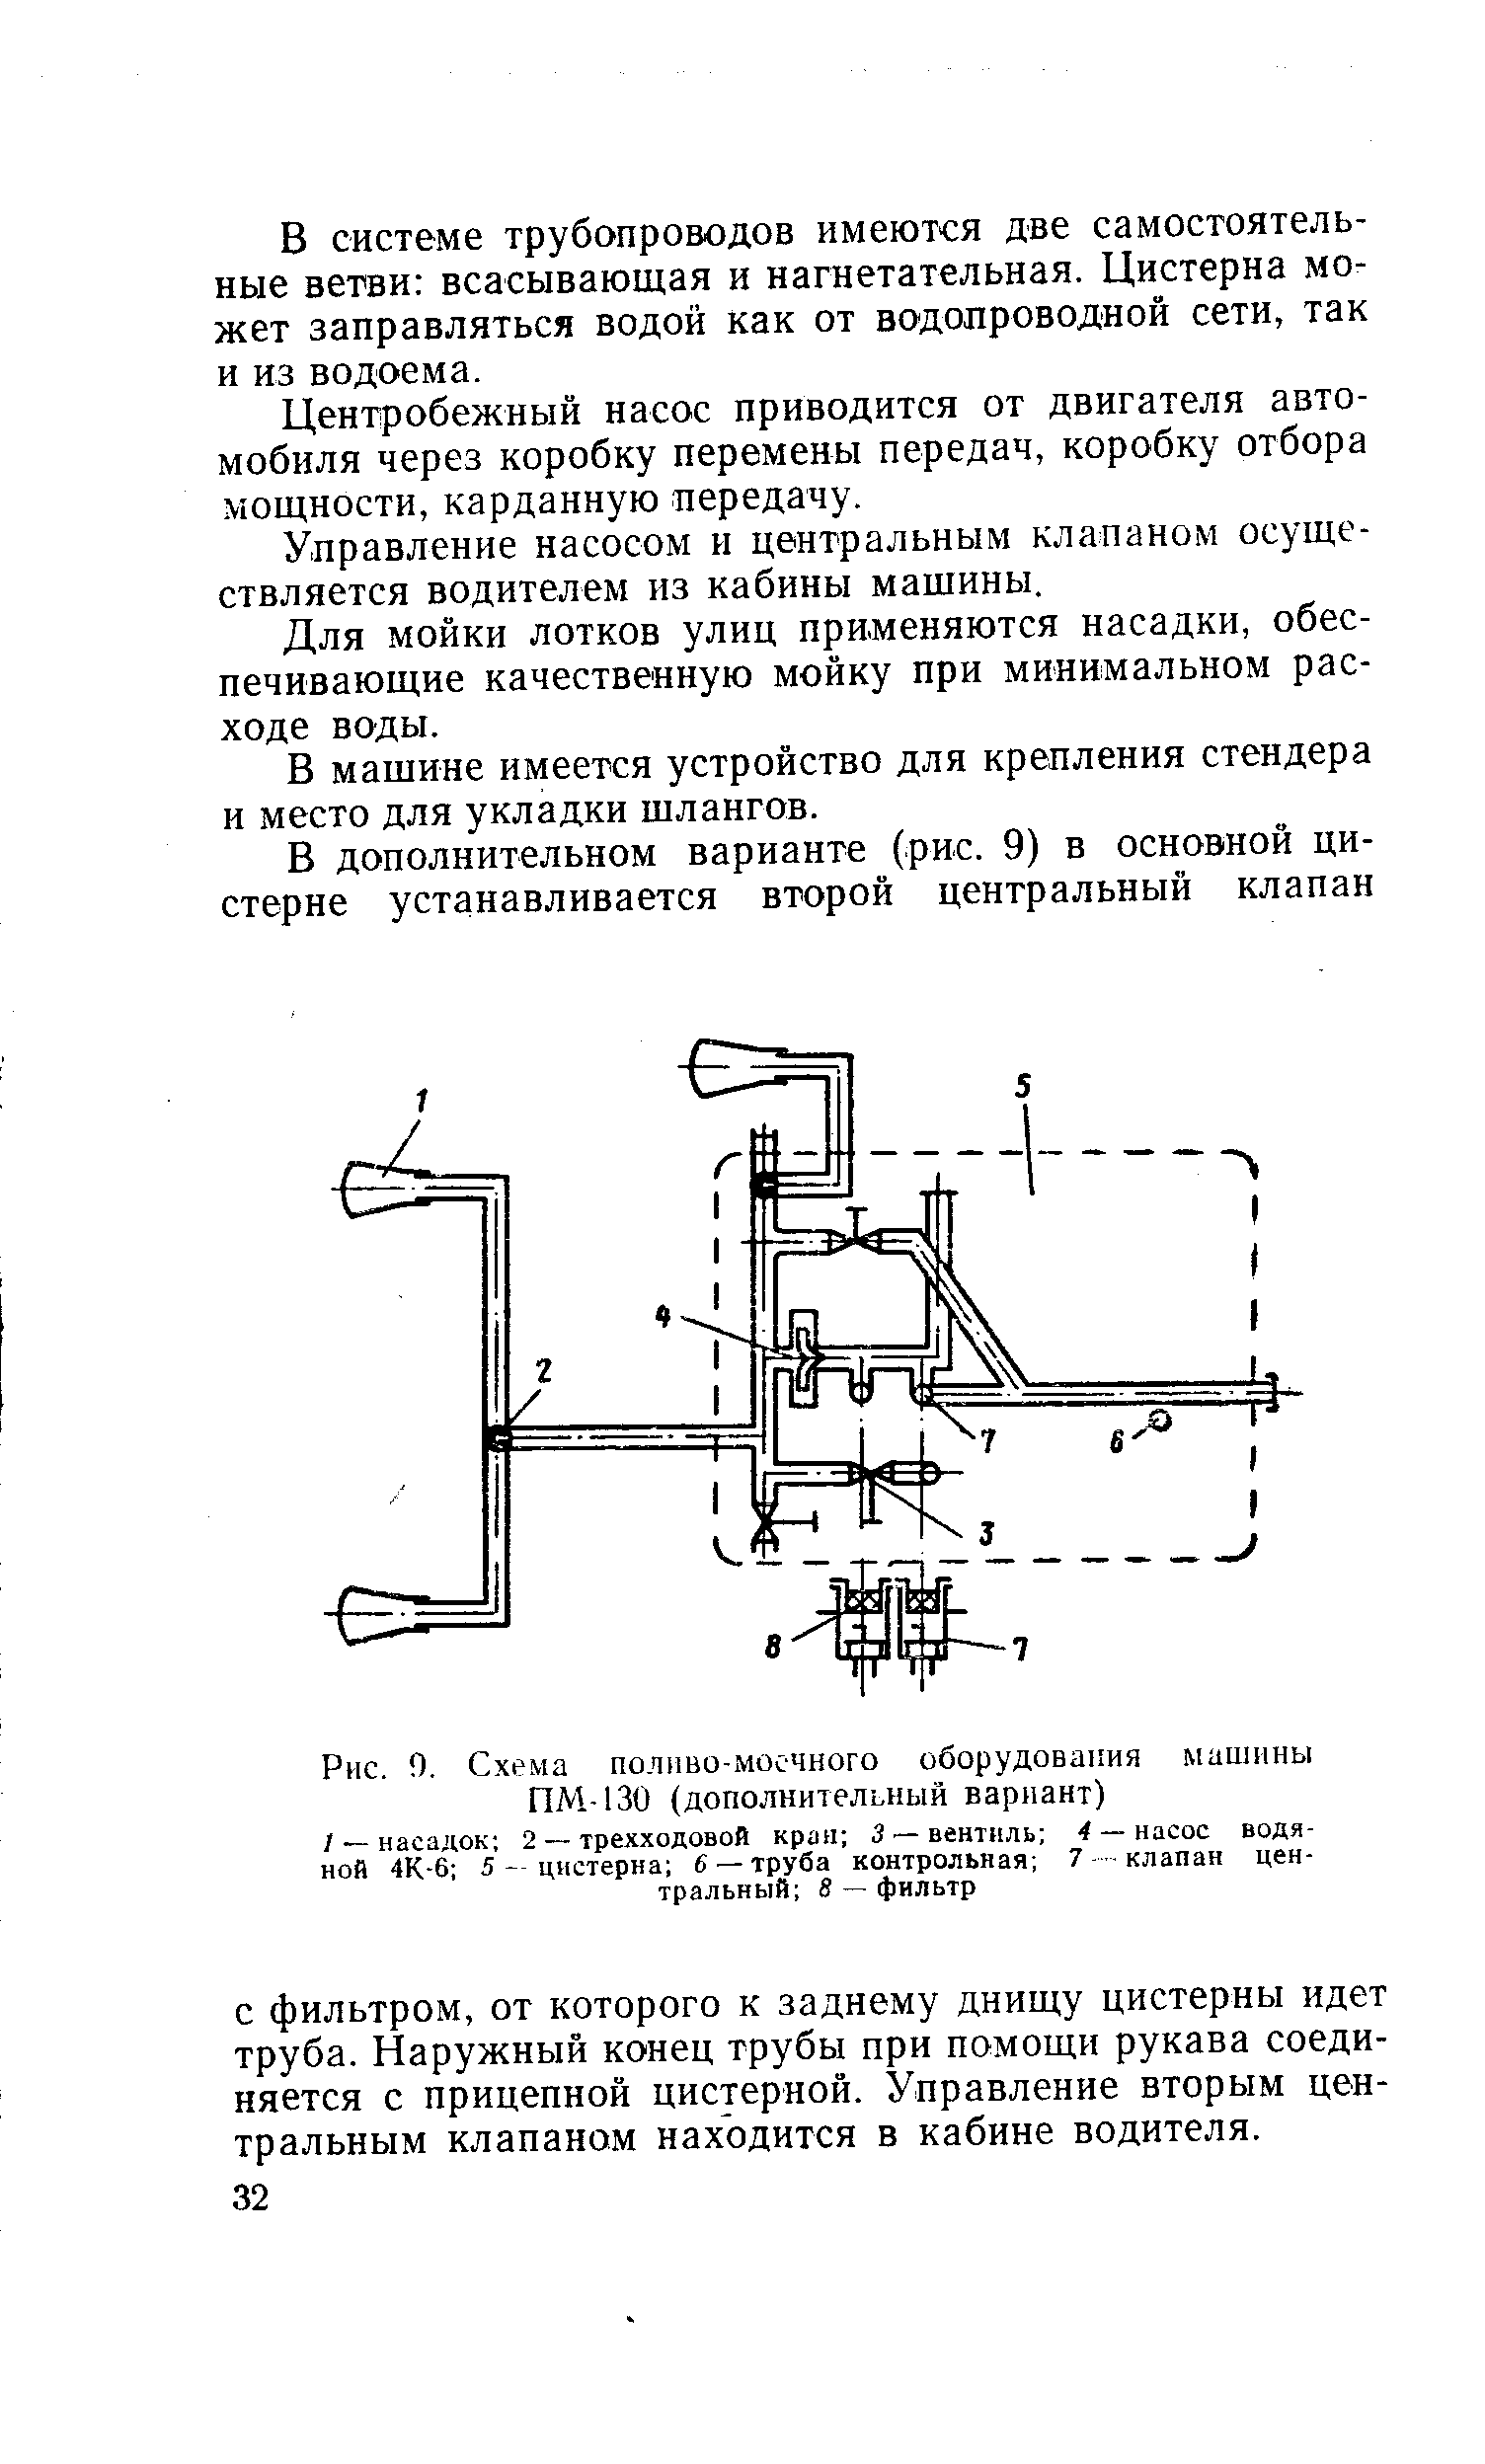 Рис. 0. Схема поливо-моечного оборудования машины ПМ-130 (дополнительный вариант)
